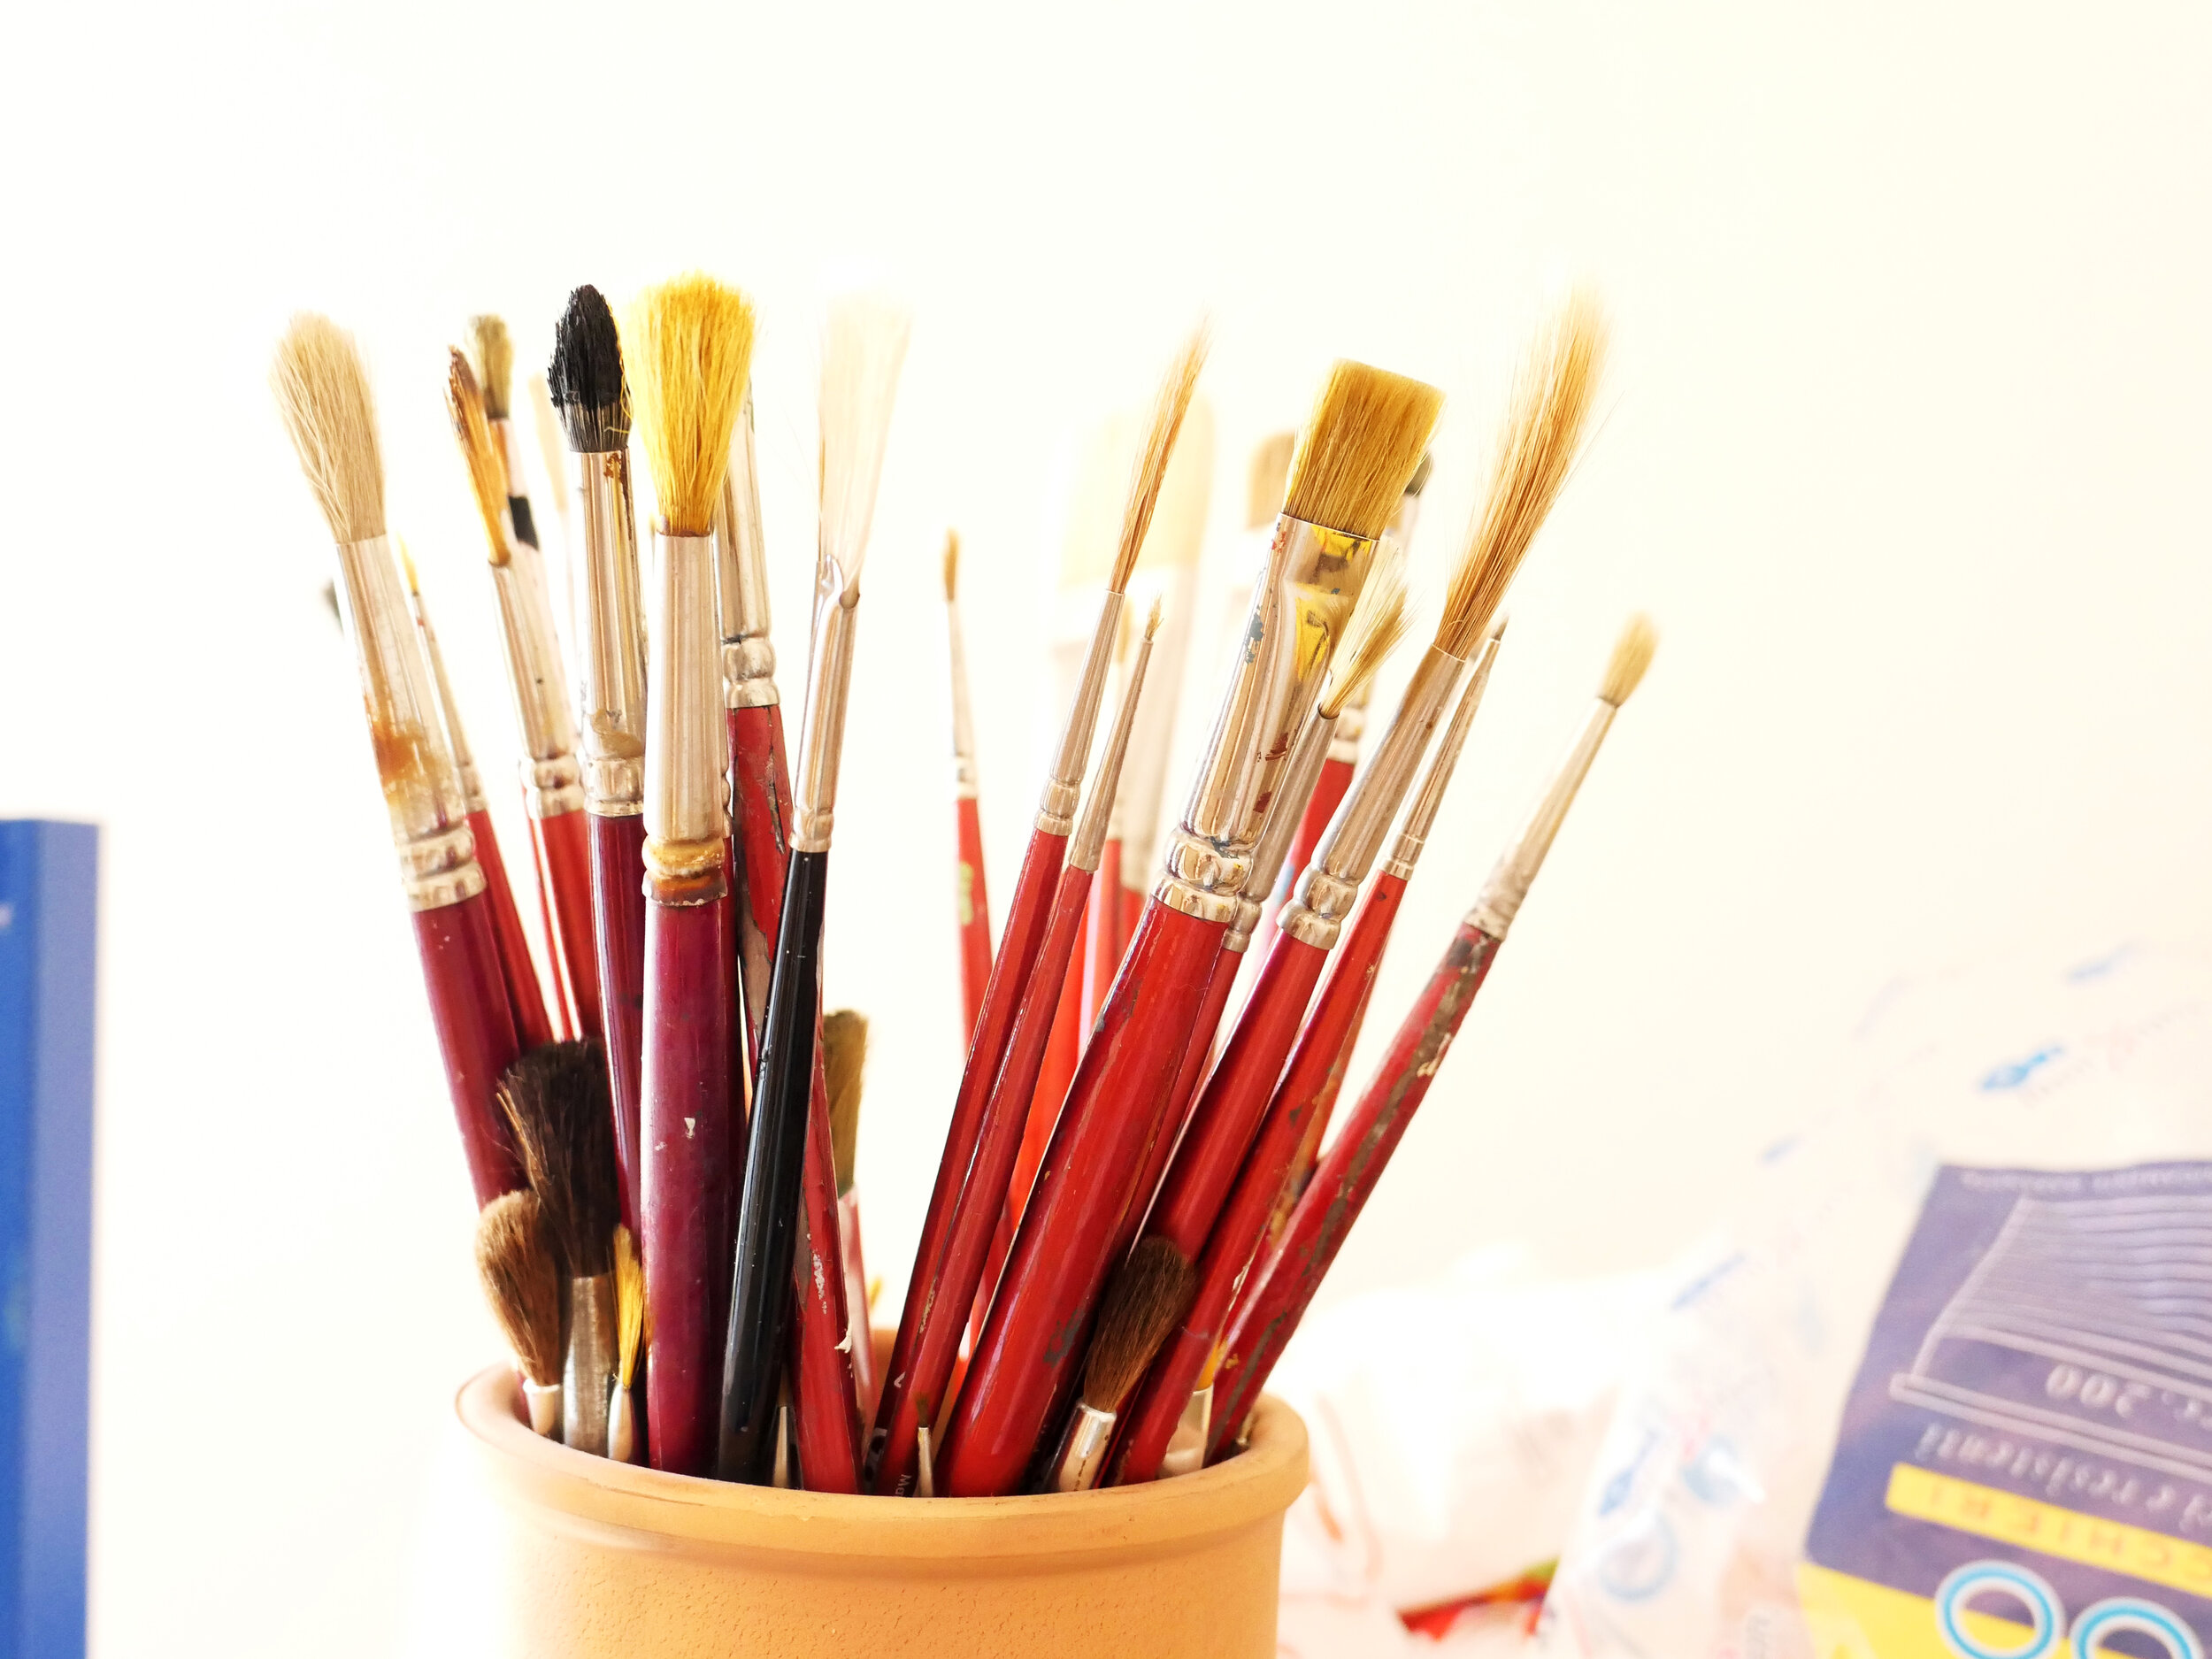 Come pulire i pennelli per la pittura ad olio PT 2 — Giuseppe Alletto